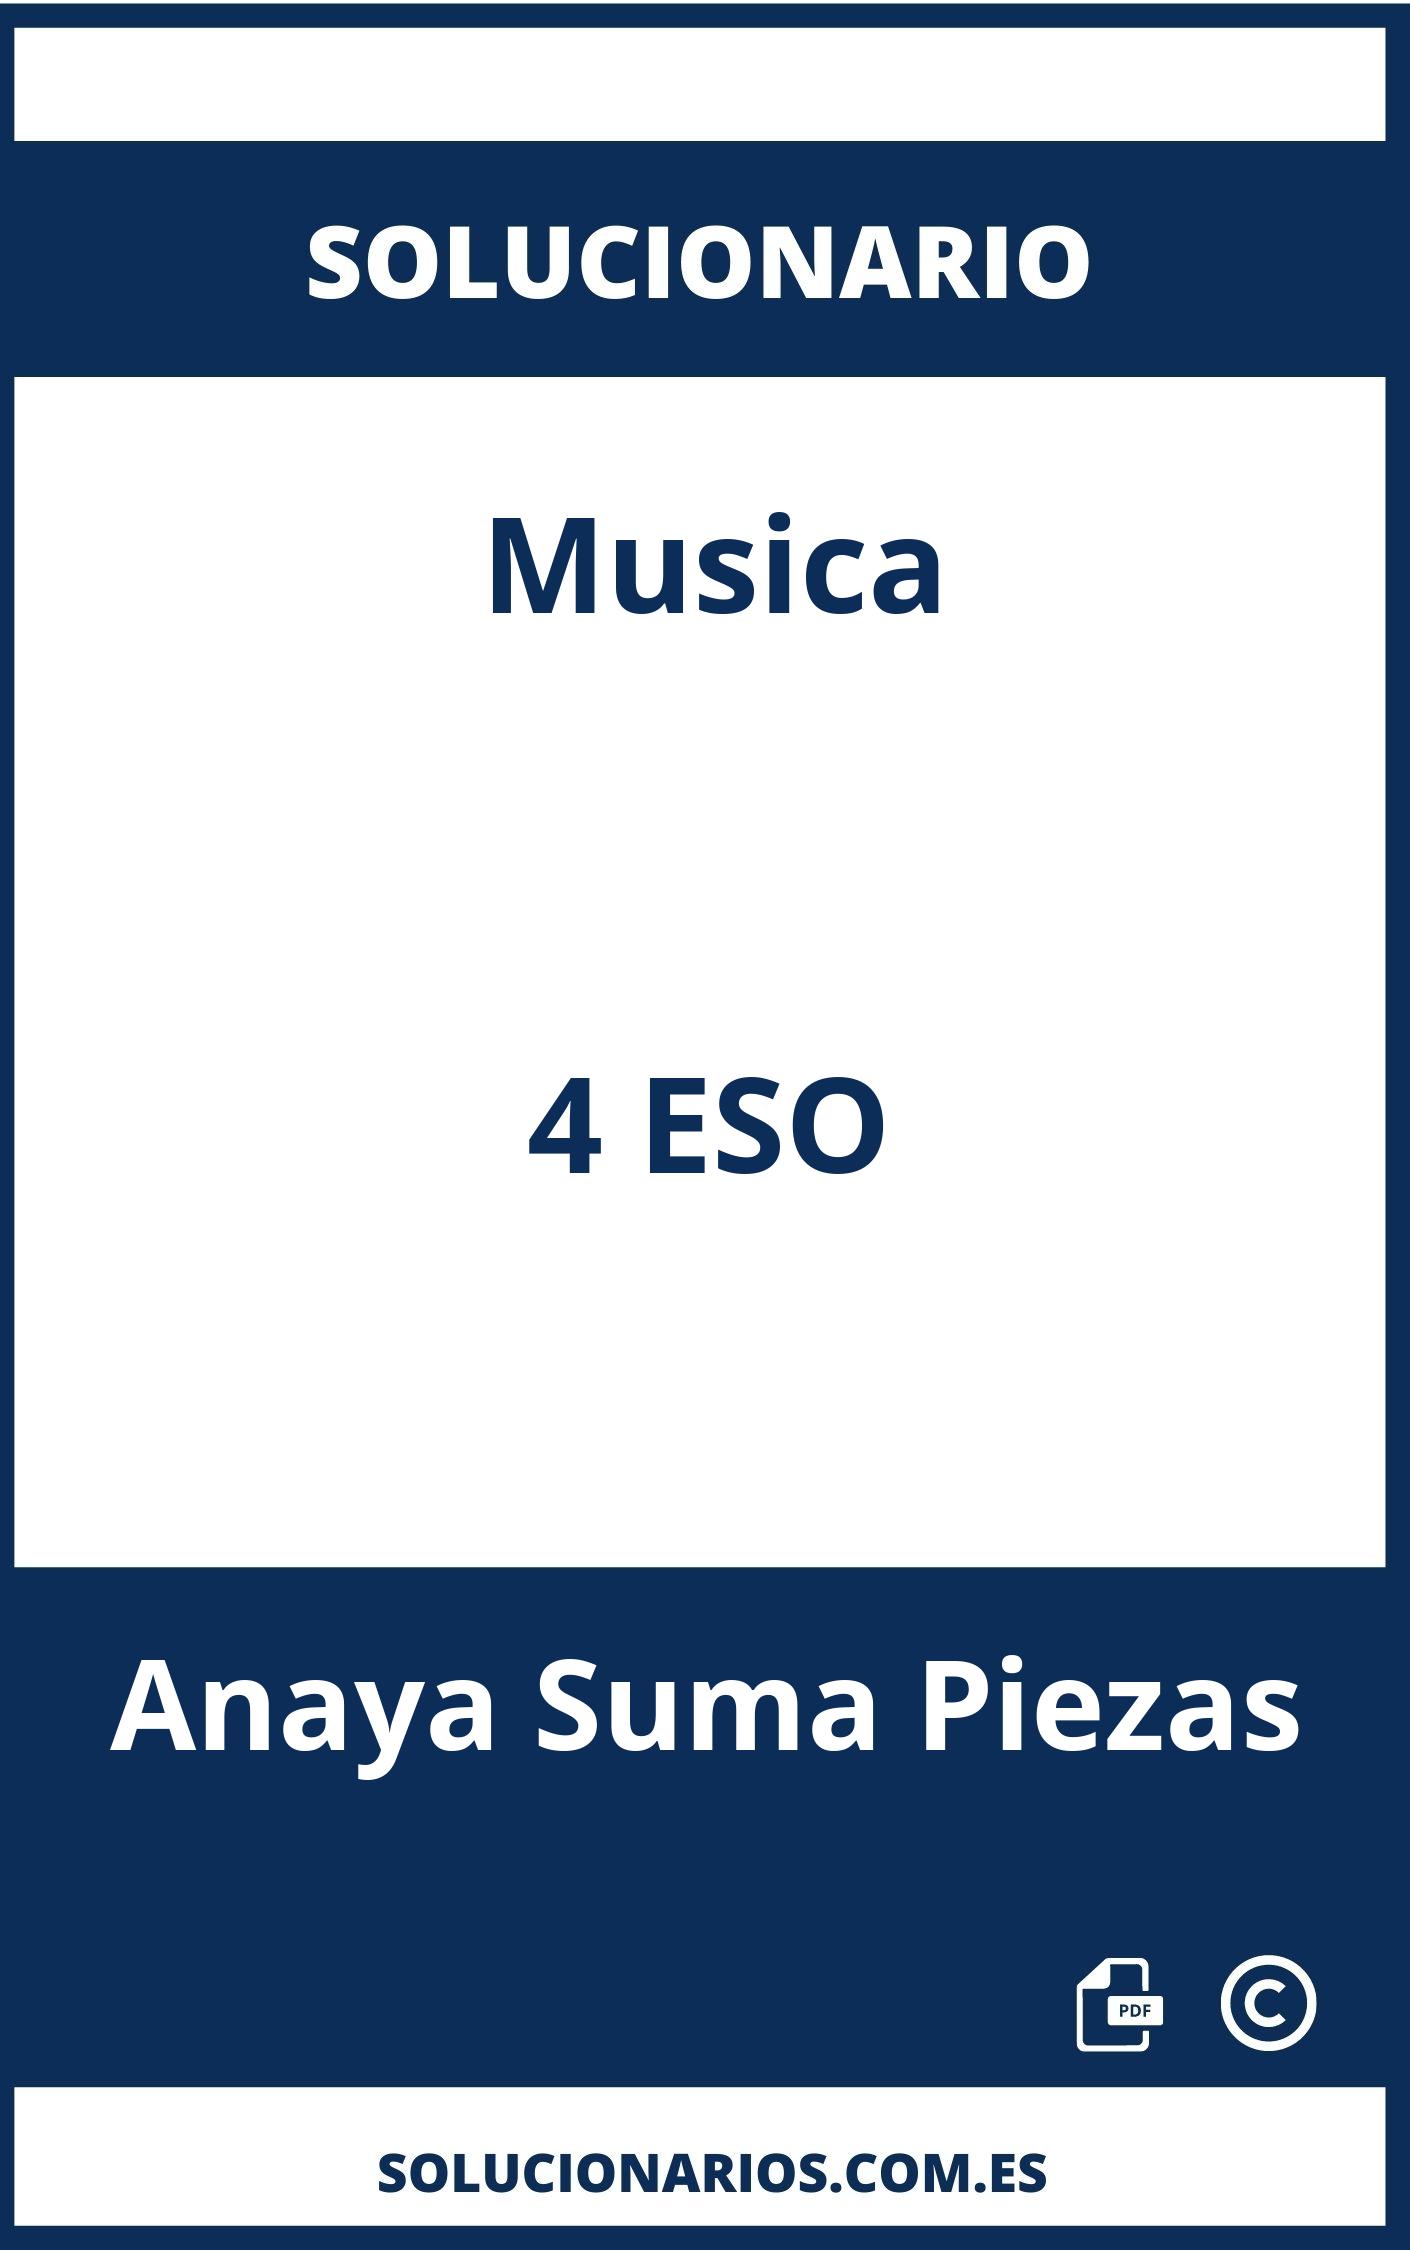 Solucionario Musica 4 ESO Anaya Suma Piezas